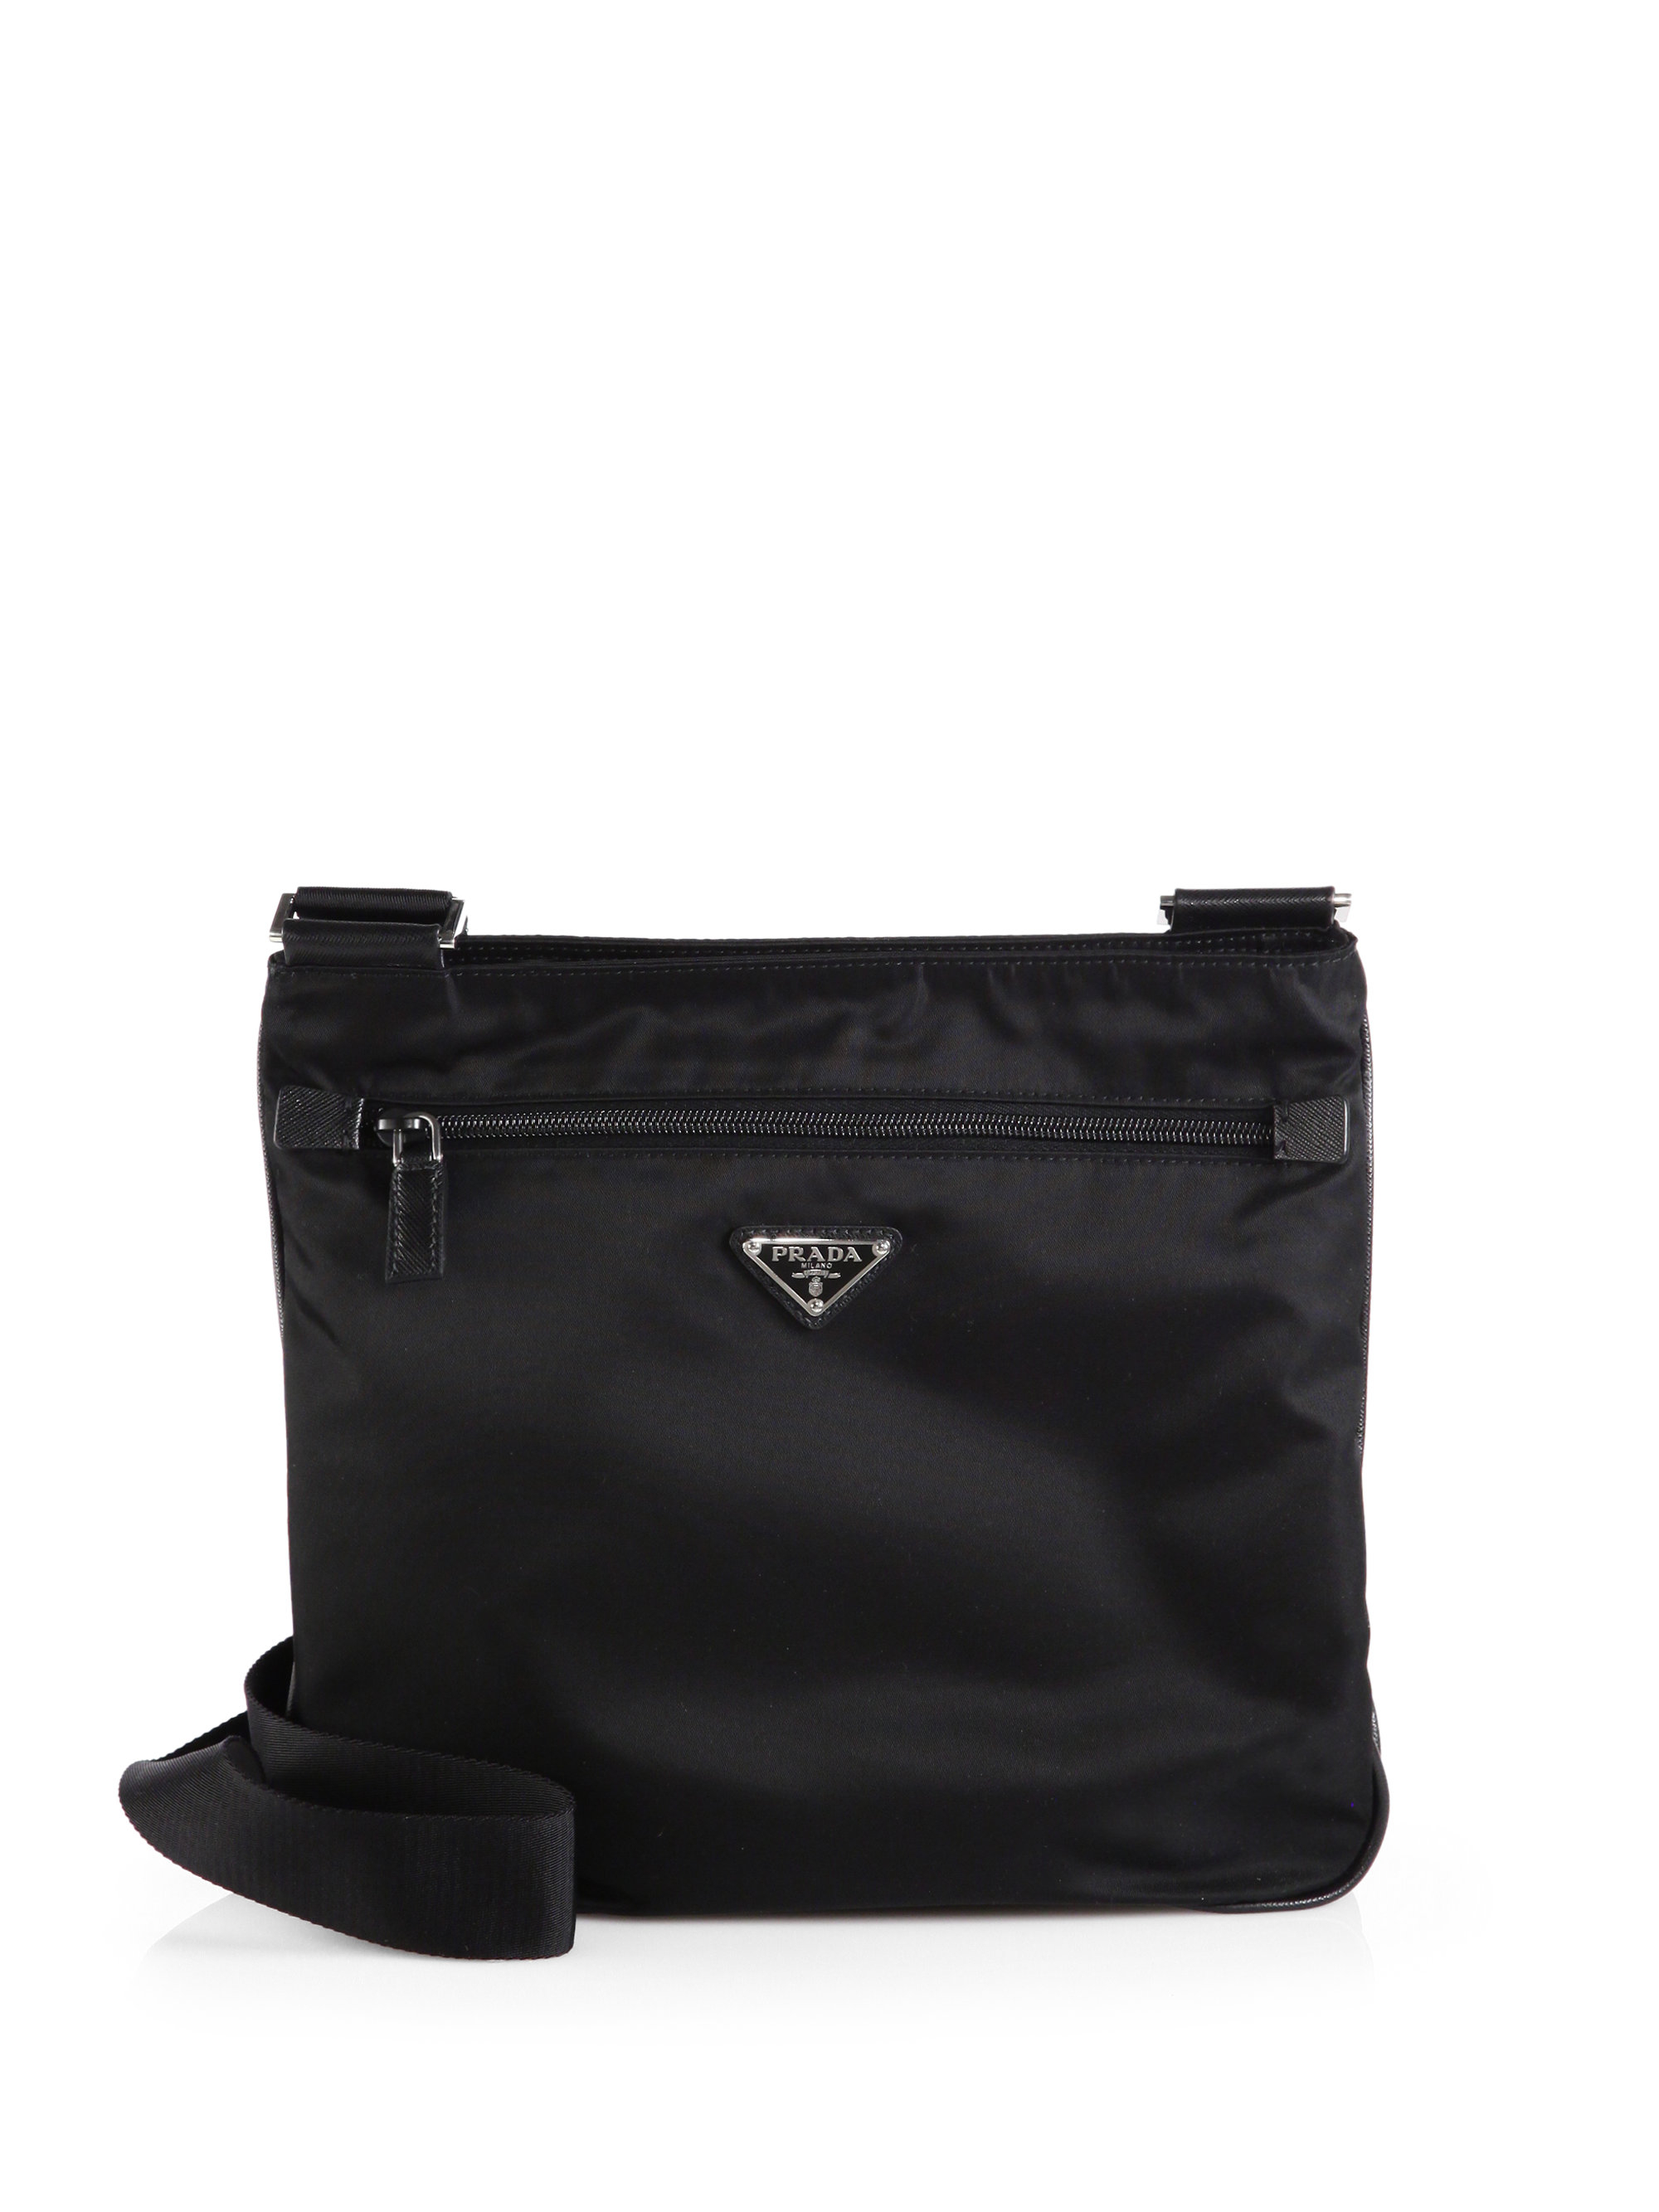 Nylon Bag in Black - Prada